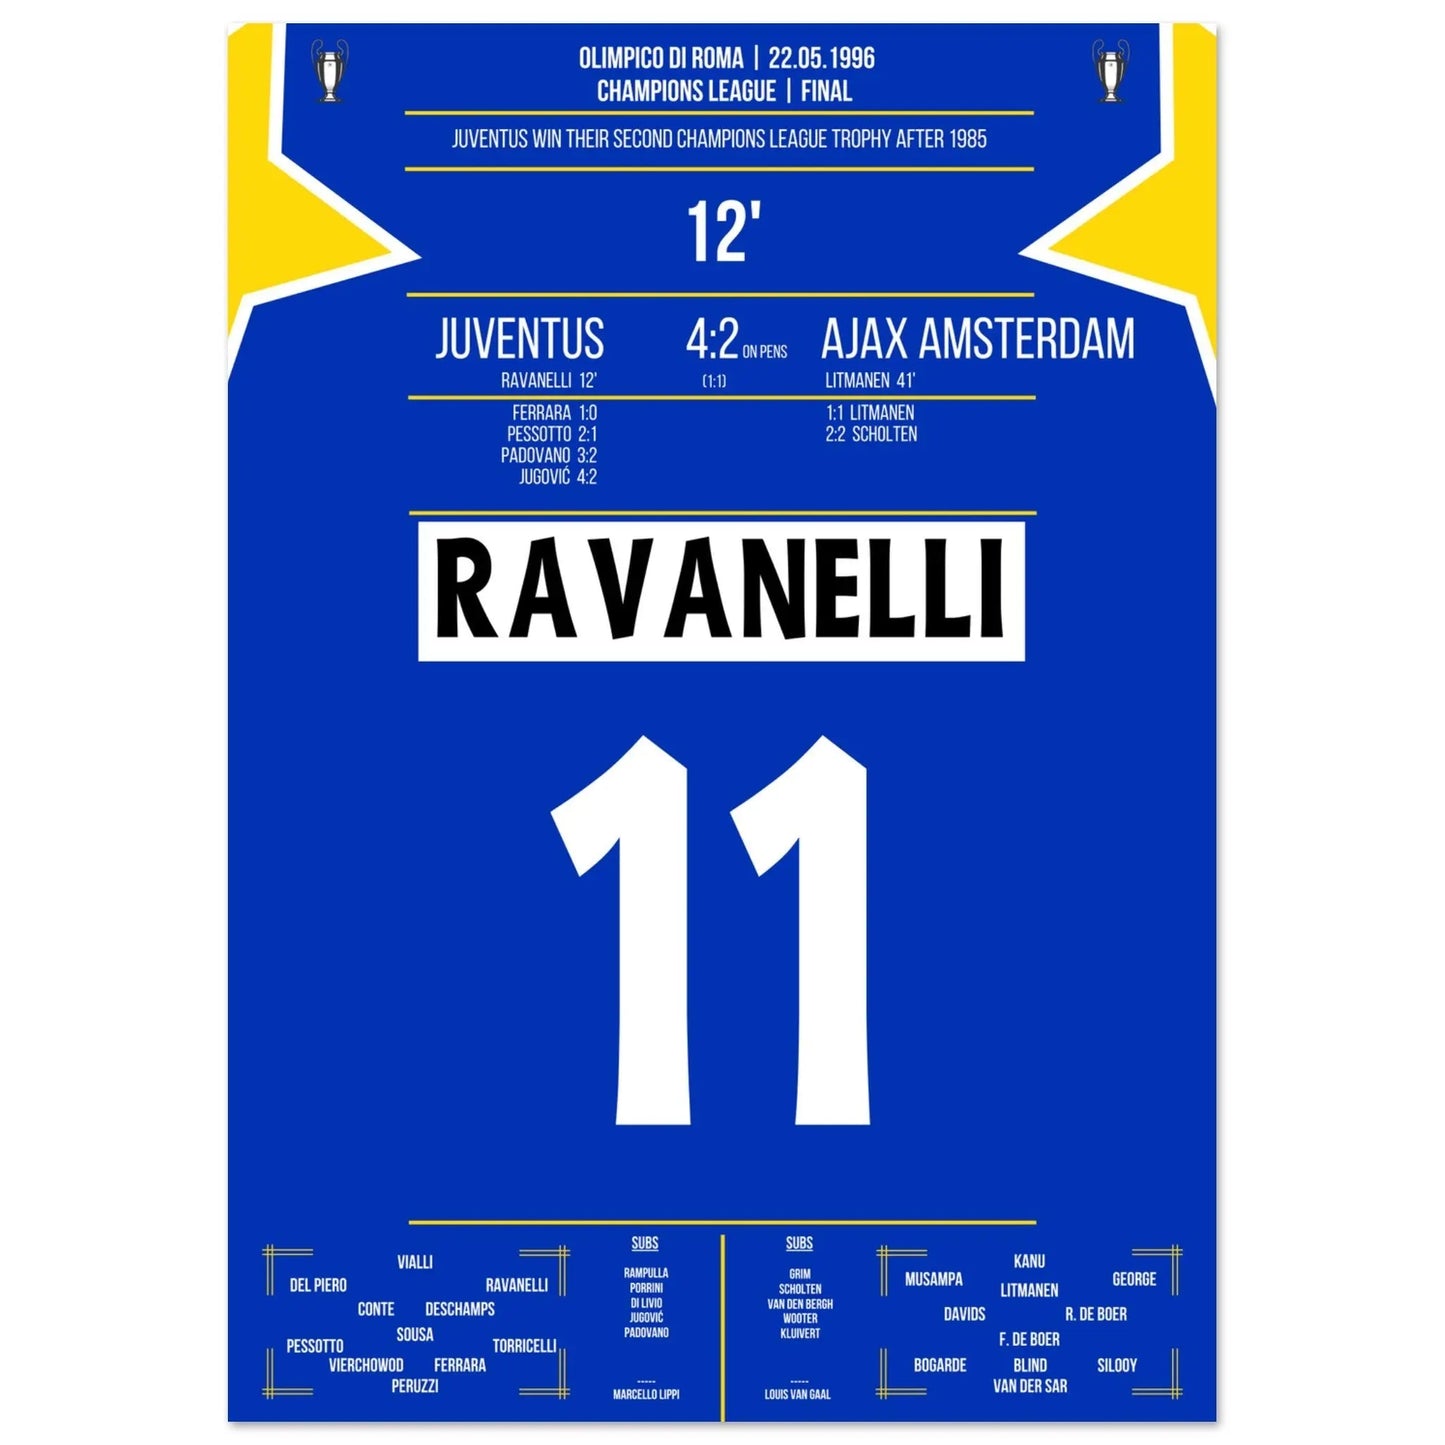 Ravanelli's doelpunt in de Champions League-finale van 1996